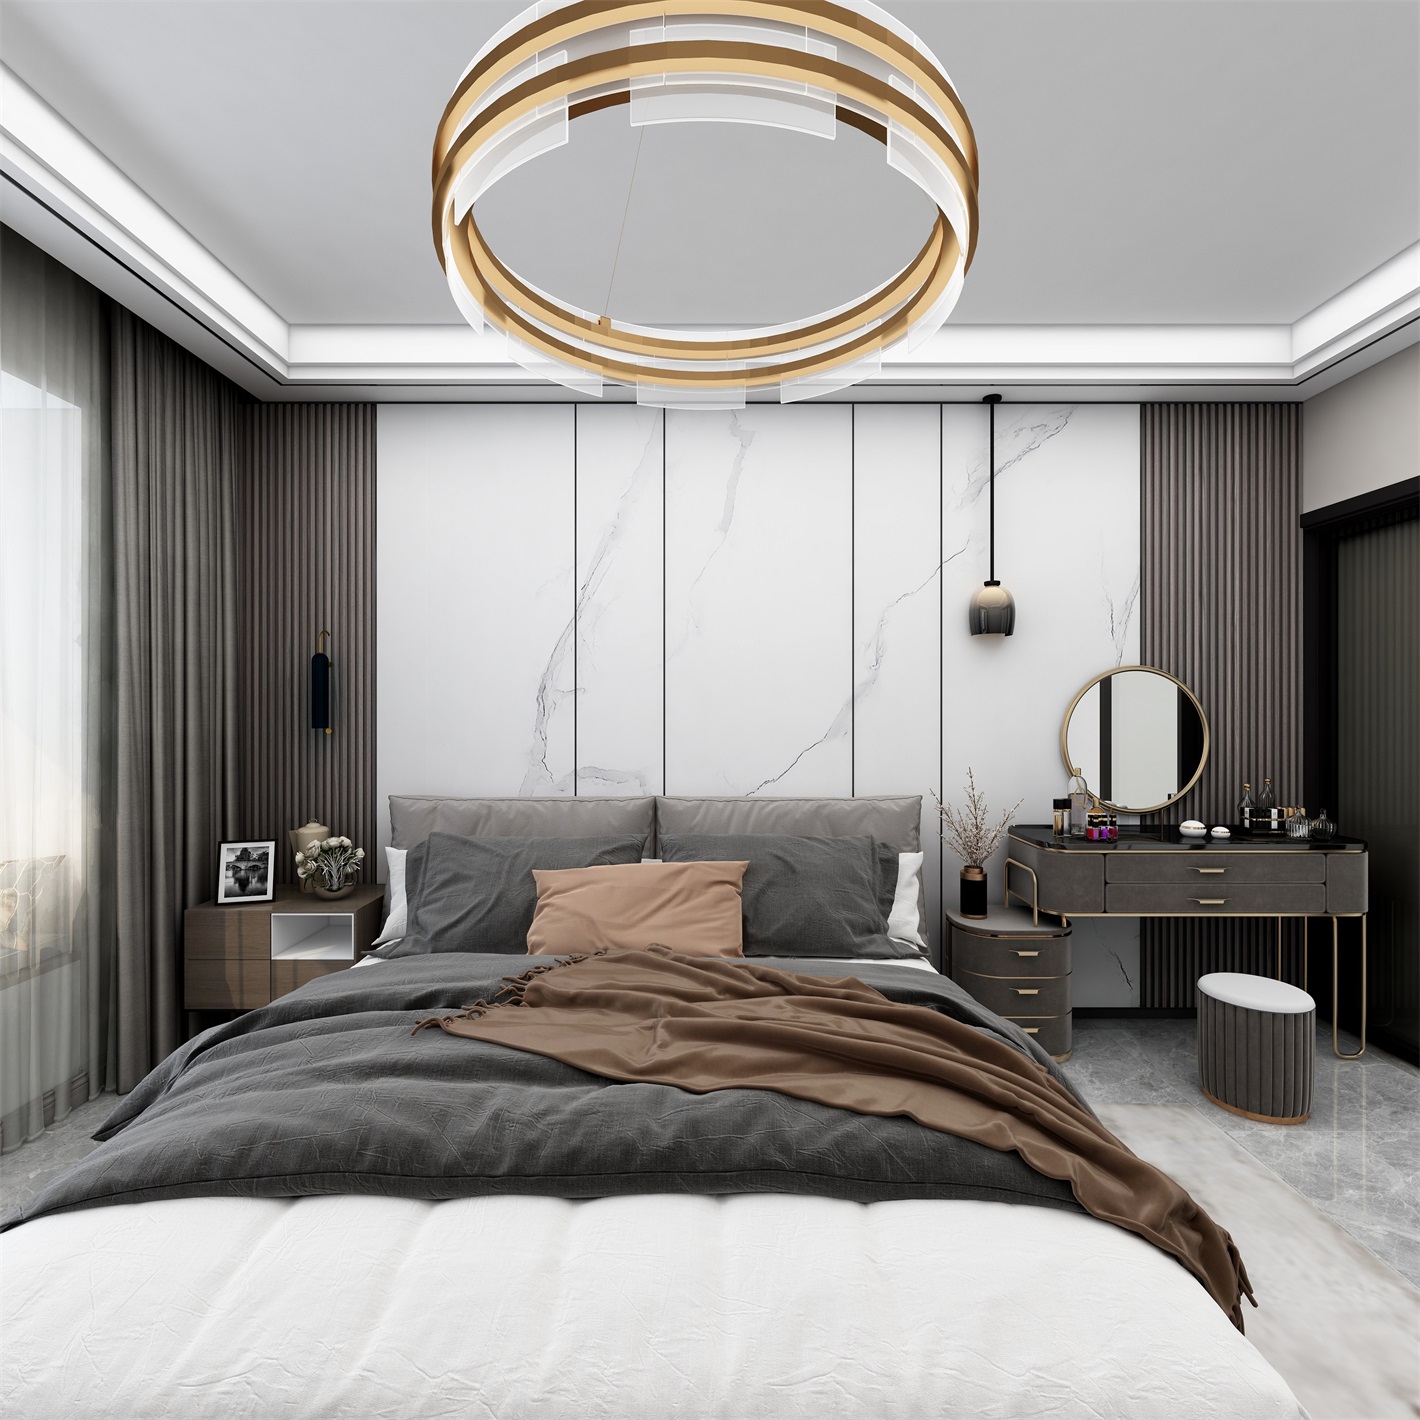 侧卧使用干净朴质的家具造型，营造出简约干练的睡眠空间，灯具造型吸睛。